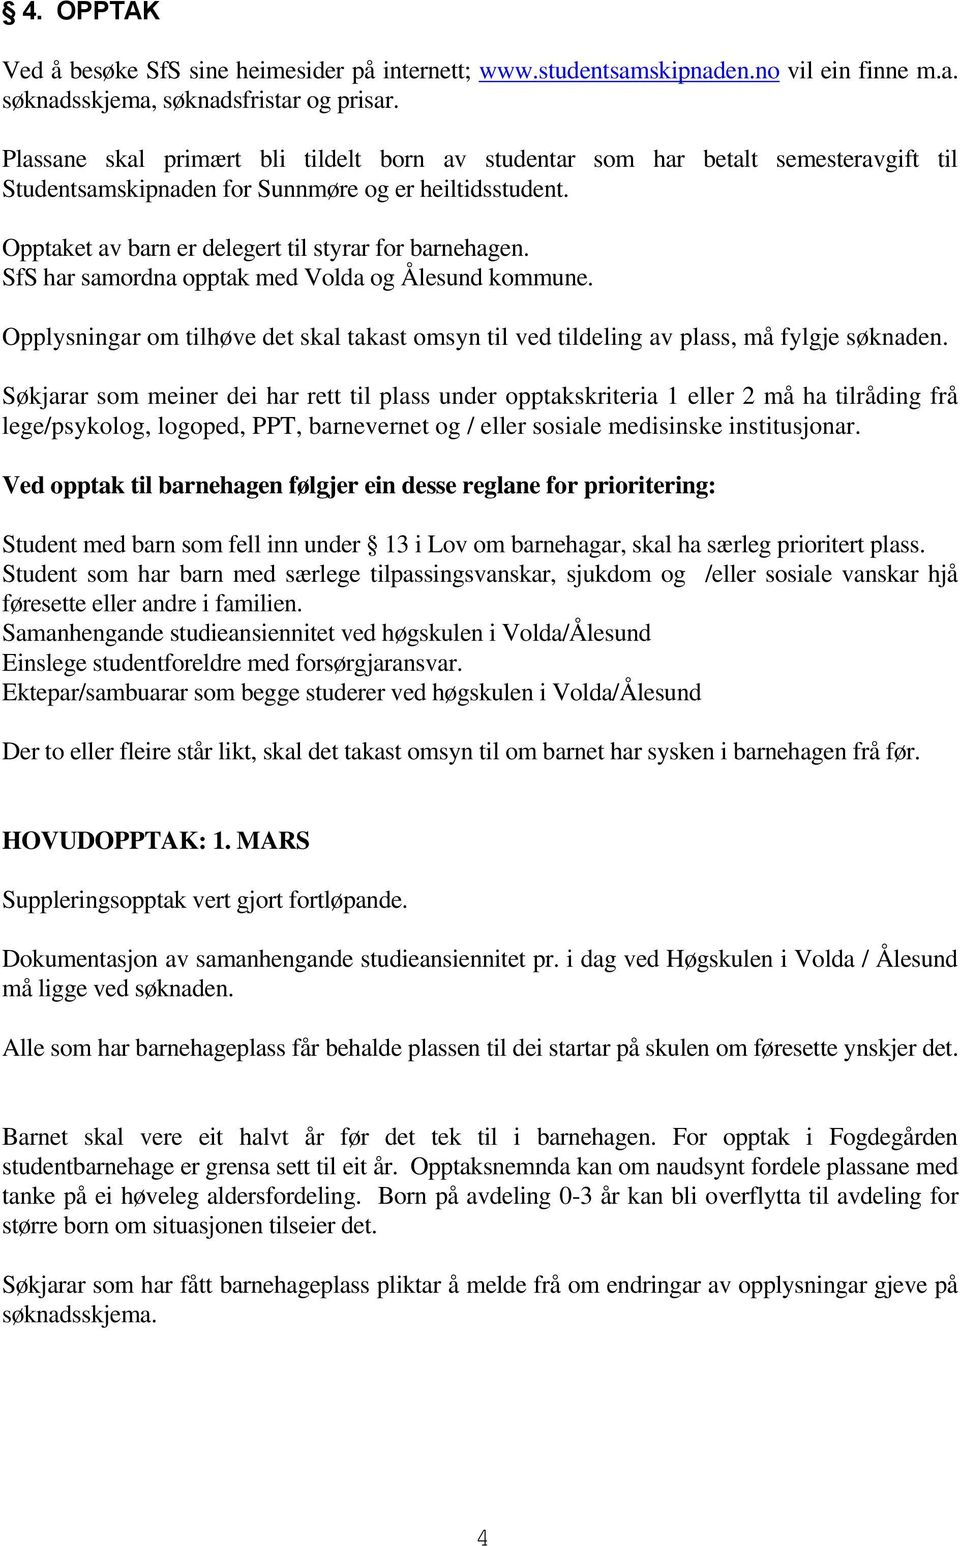 SfS har samordna opptak med Volda og Ålesund kommune. Opplysningar om tilhøve det skal takast omsyn til ved tildeling av plass, må fylgje søknaden.